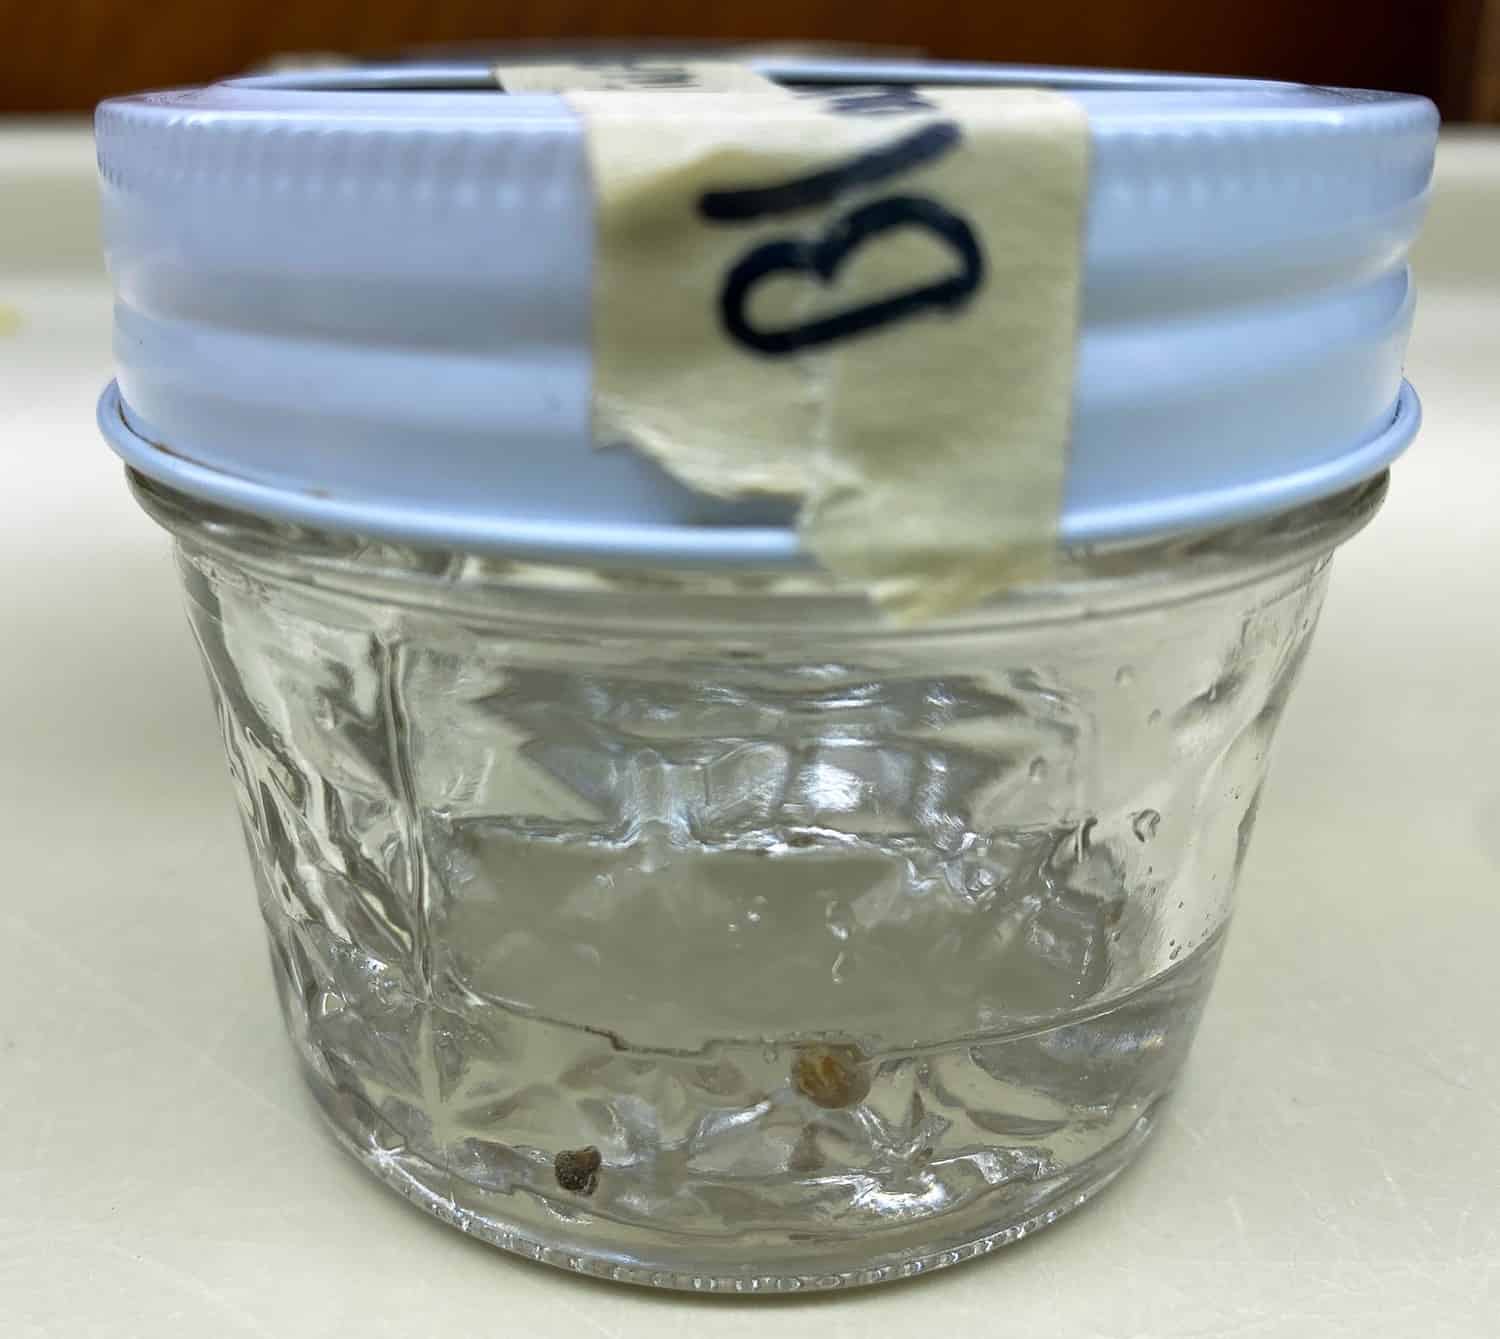 semillas de espinaca remojadas en una solución de peróxido de hidrógeno al 3%